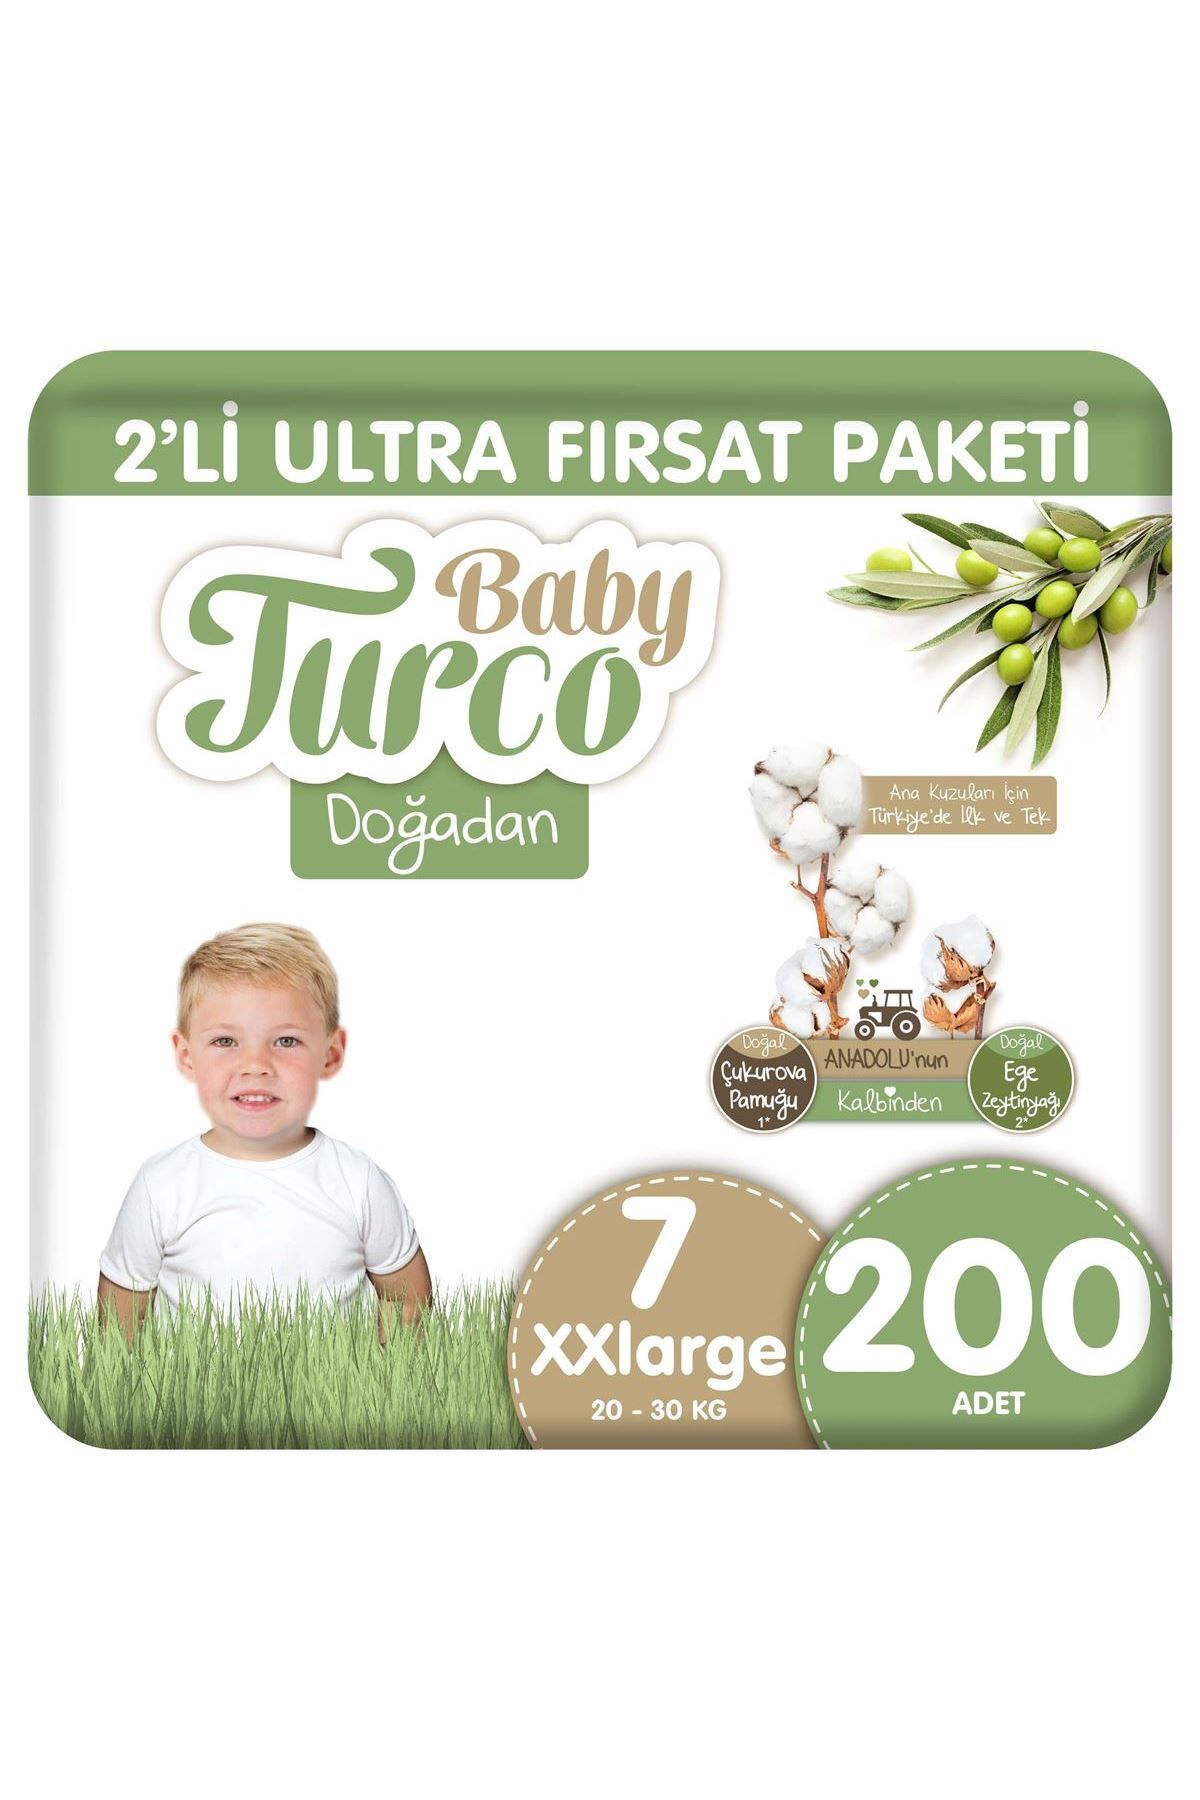 Baby Turco Doğadan 2'li Ultra Fırsat Paketi Bebek Bezi 7 Numara Xxlarge 200 Adet